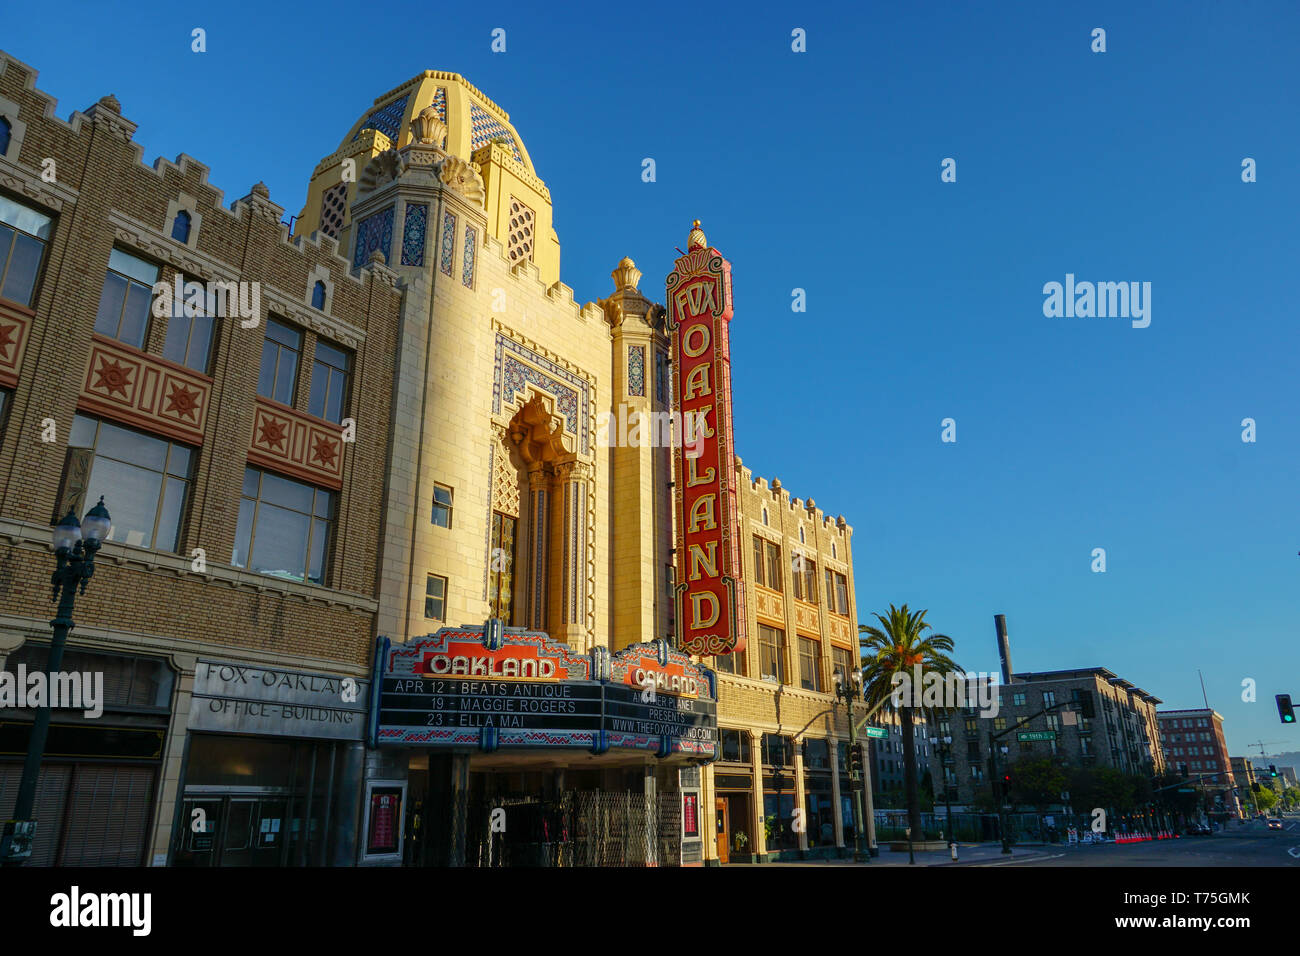 OAKLAND, Kalifornien - 13. APRIL 2019: Am Morgen die Sonne steigt auf dem Fox Oakland Theater, Konzertsaal und ehemaligen Kino in der Innenstadt von Oakland. Stockfoto